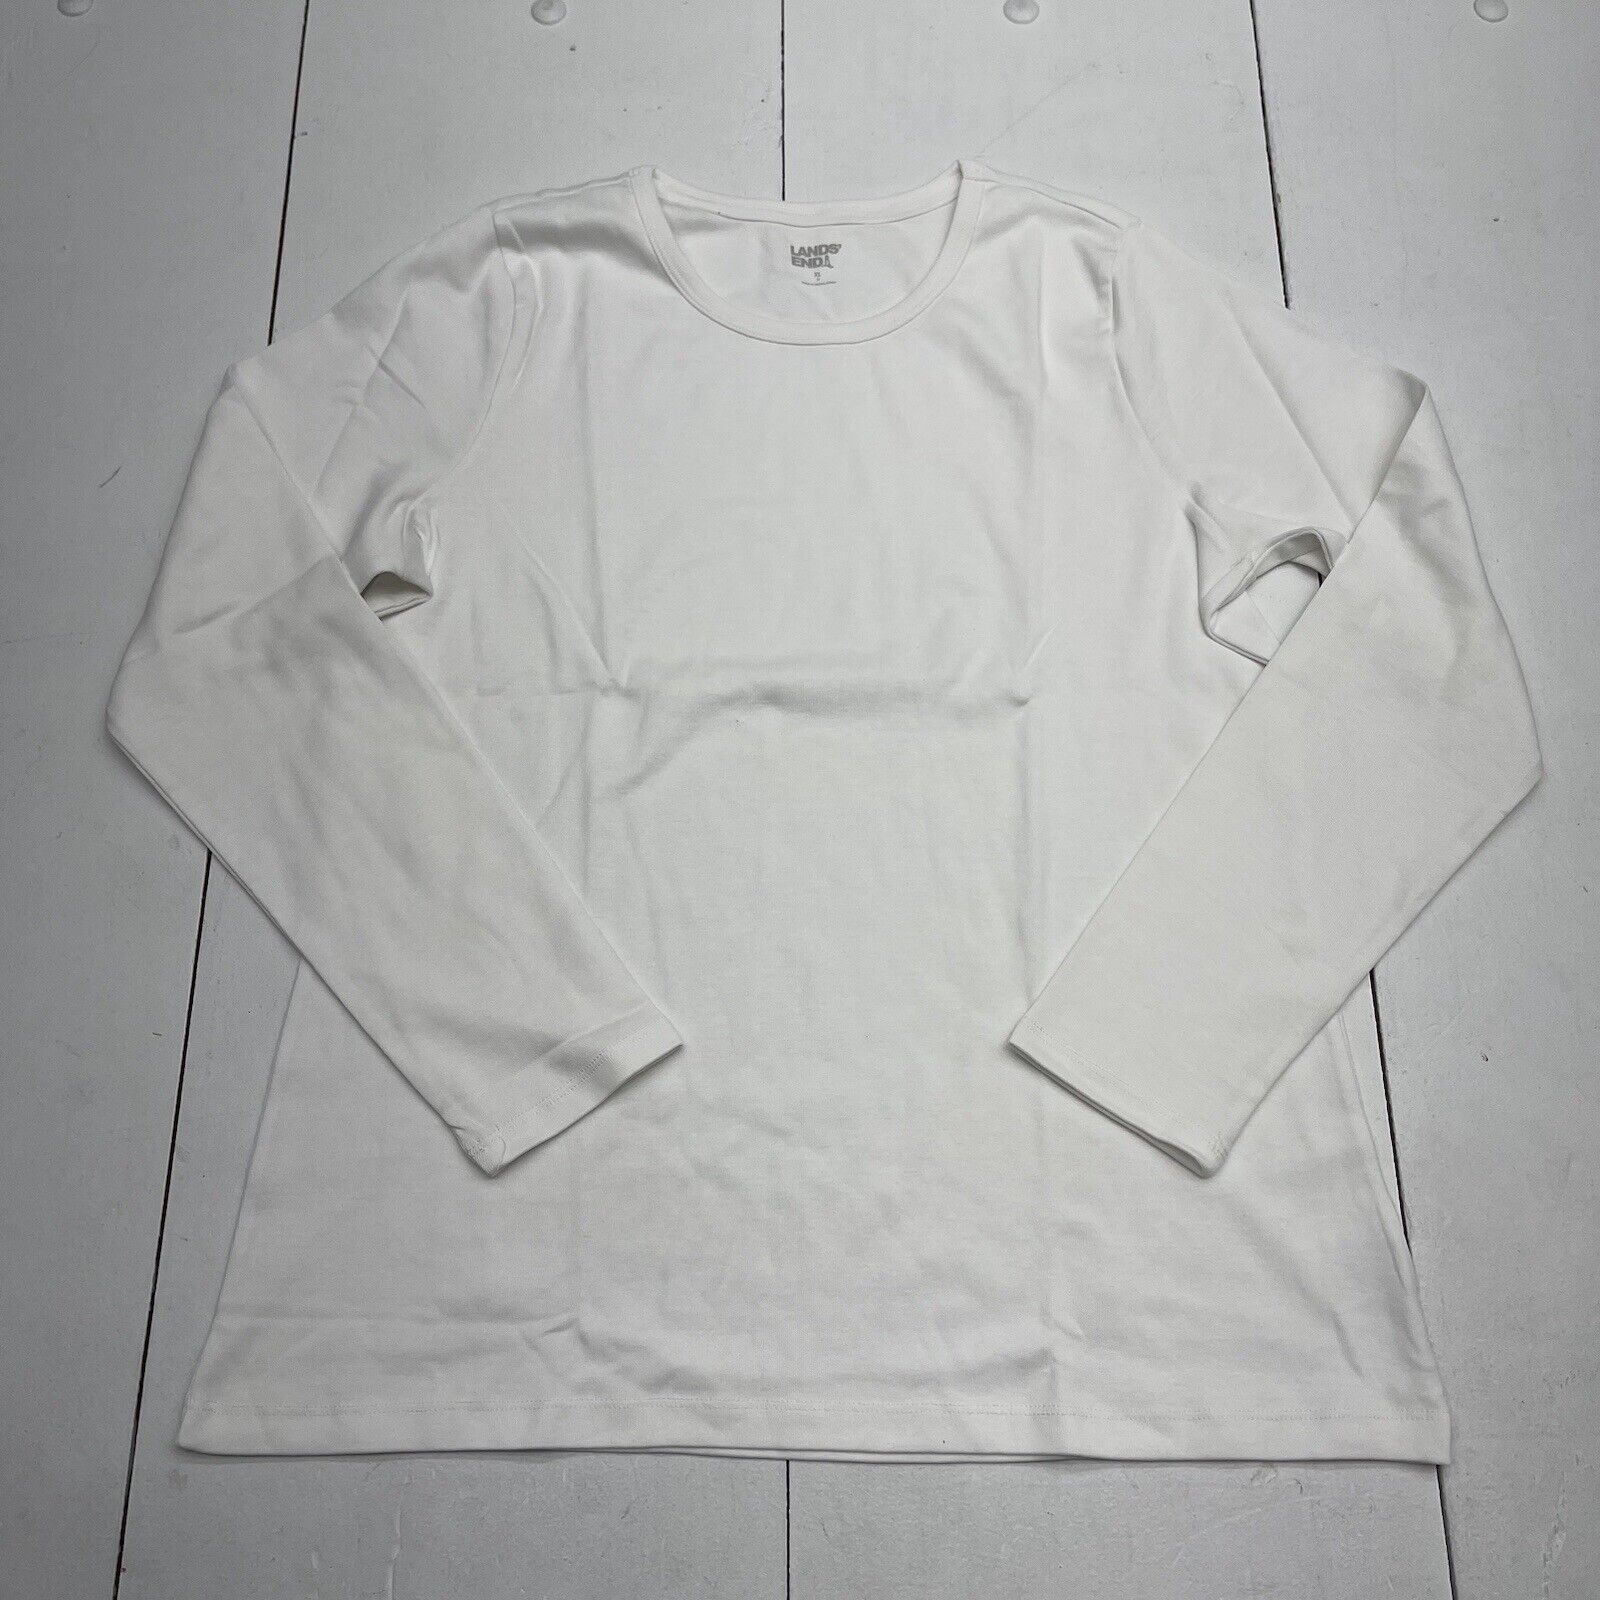 Lands End White Cotton Long Sleeve Crewneck T Shirt Women’s Size XL